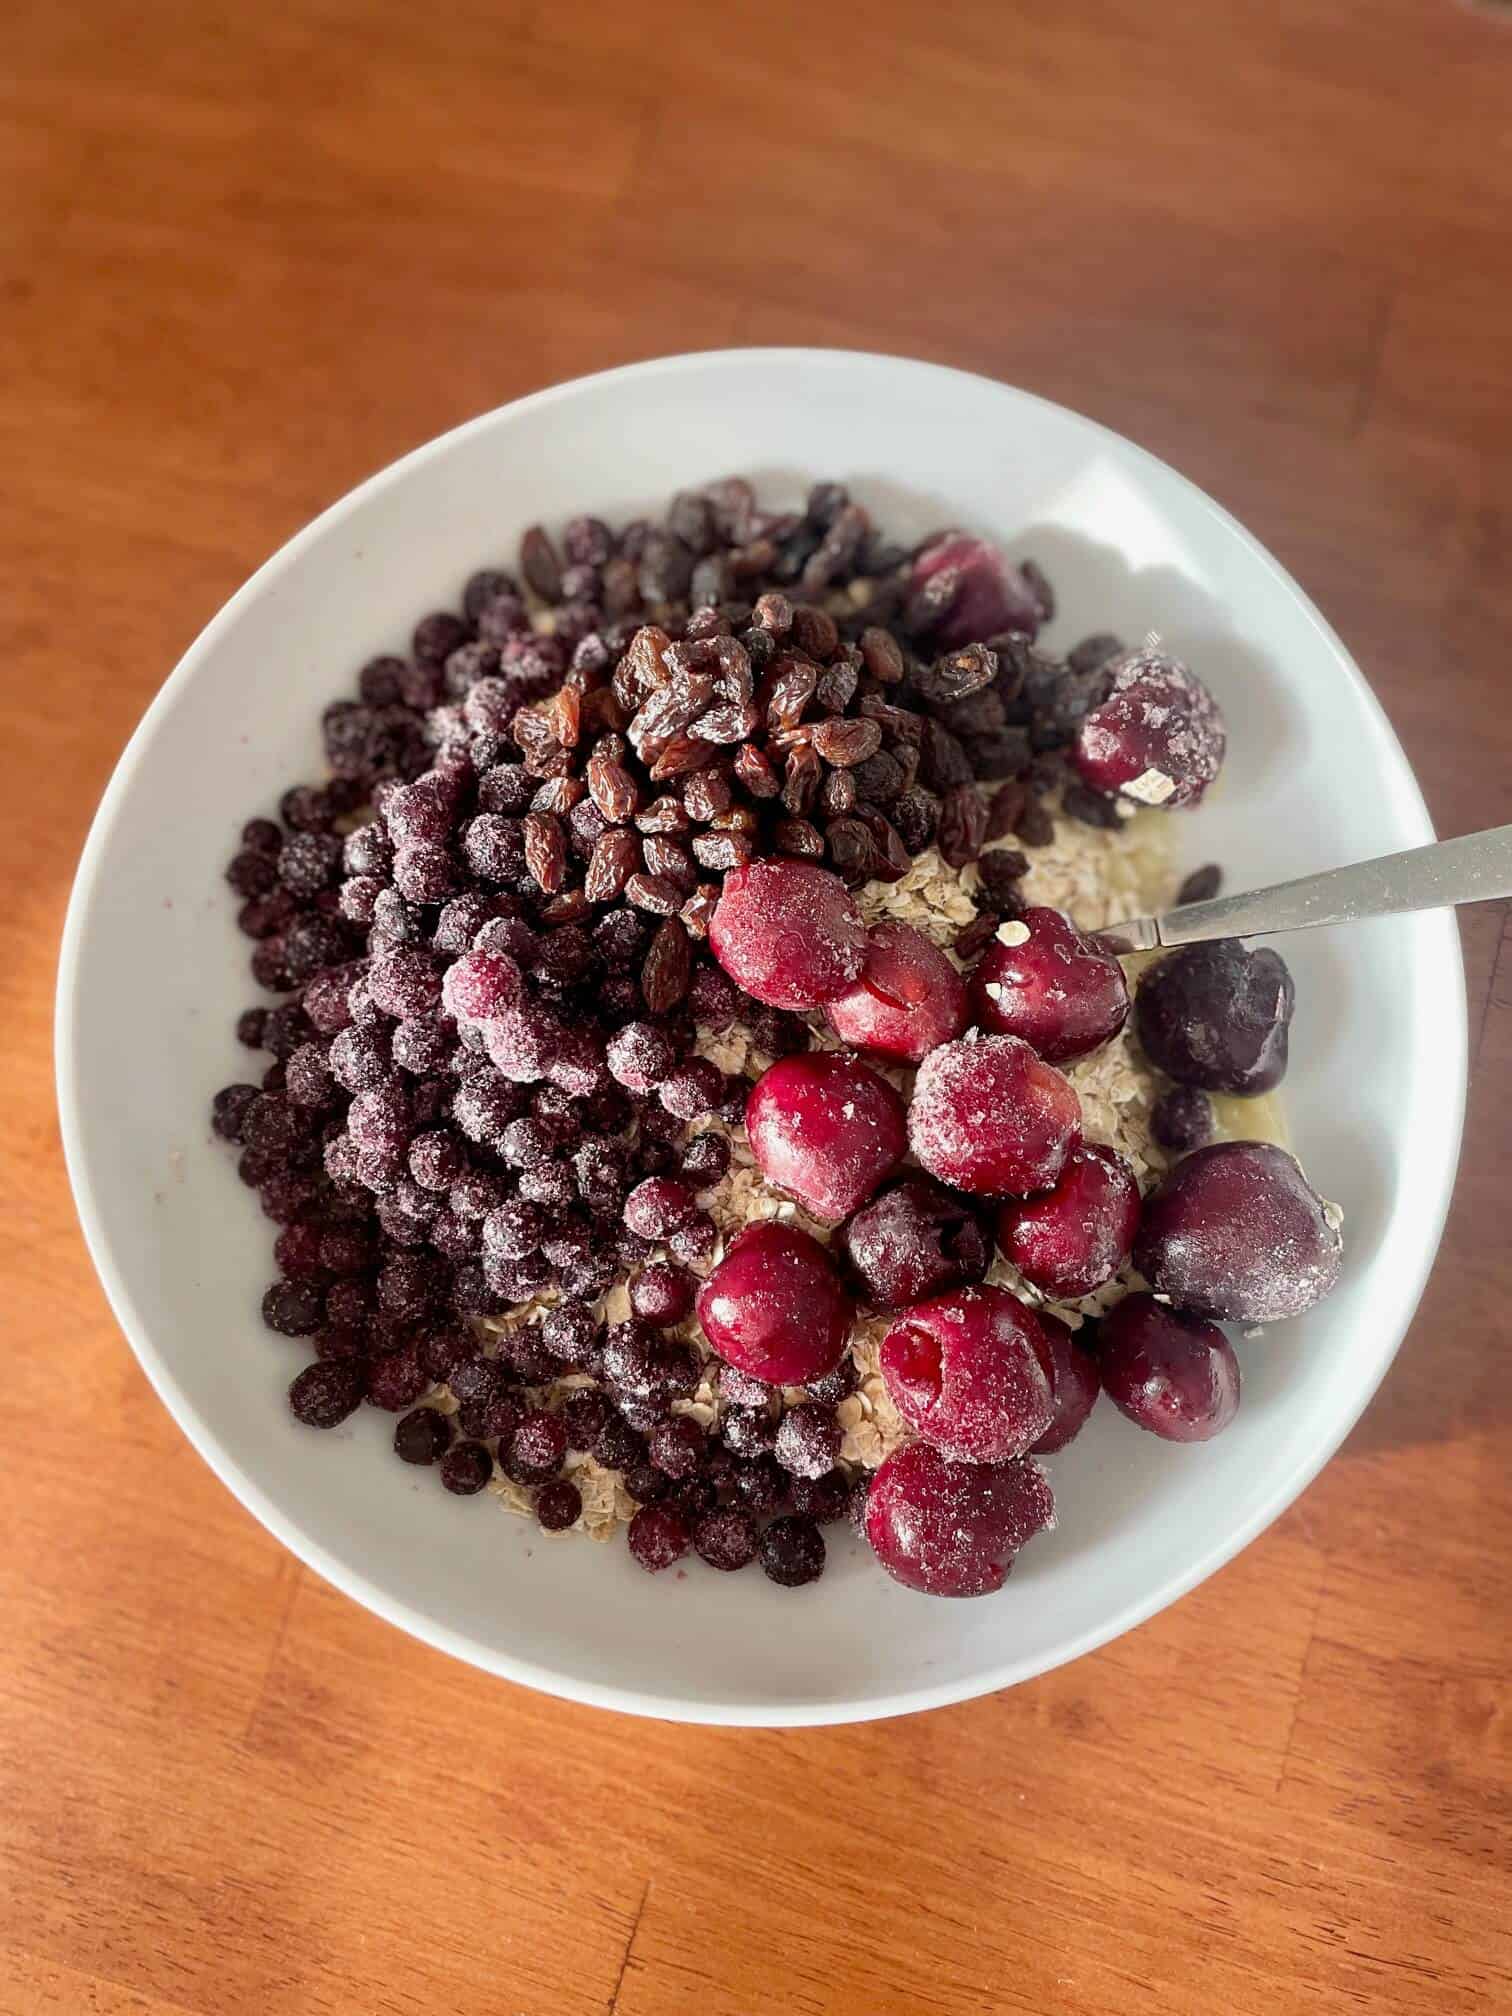 Berries thawing in bowl of oats - Daniel Fast breakfast idea